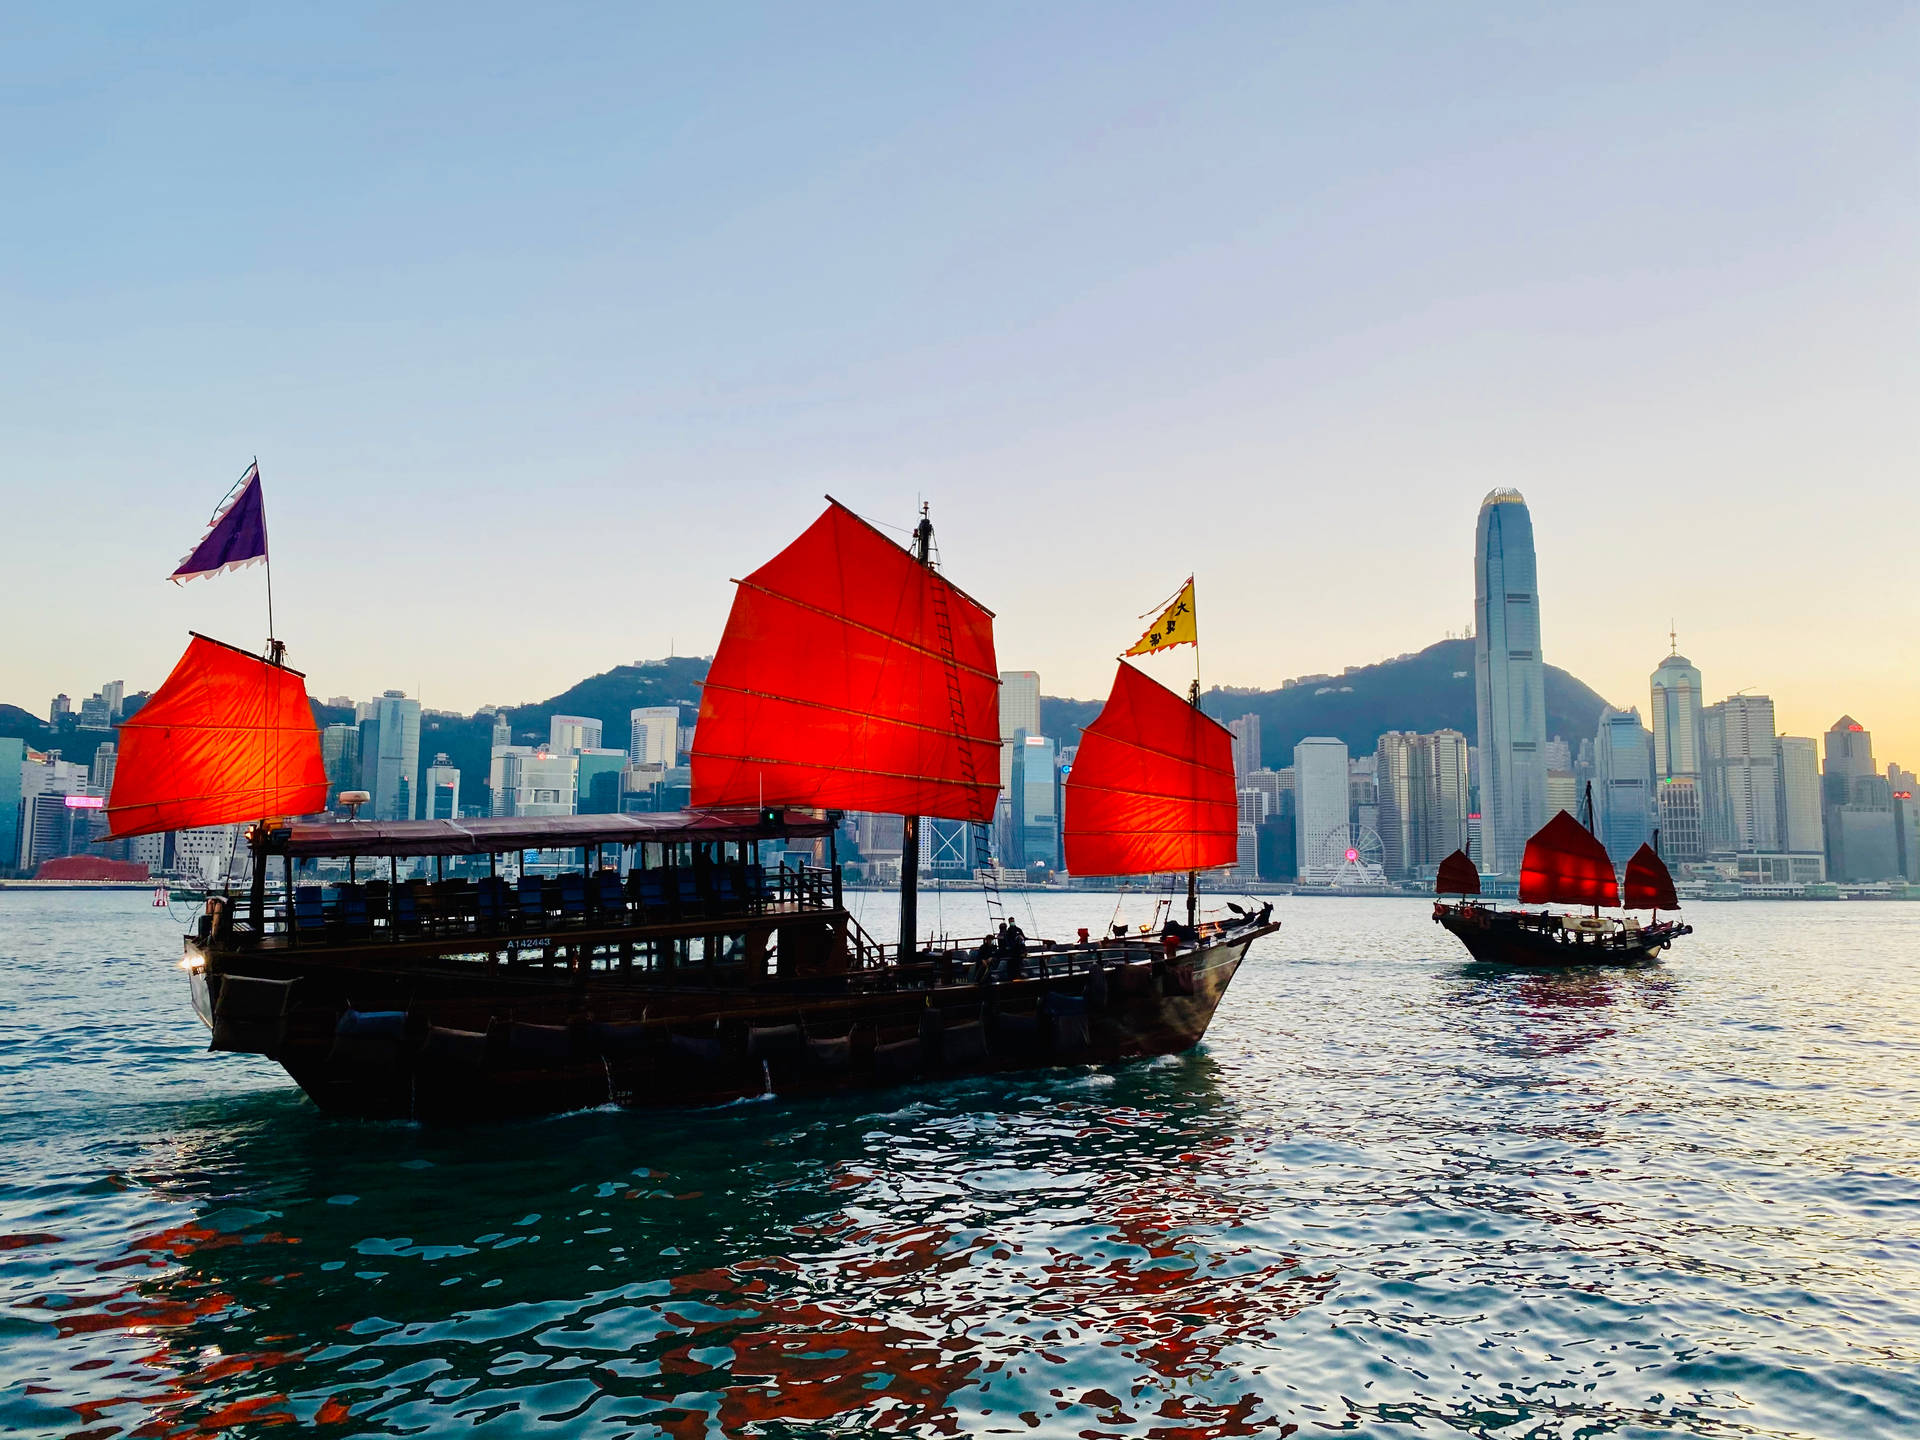 Hong Kong Dukling Harbor Cruise